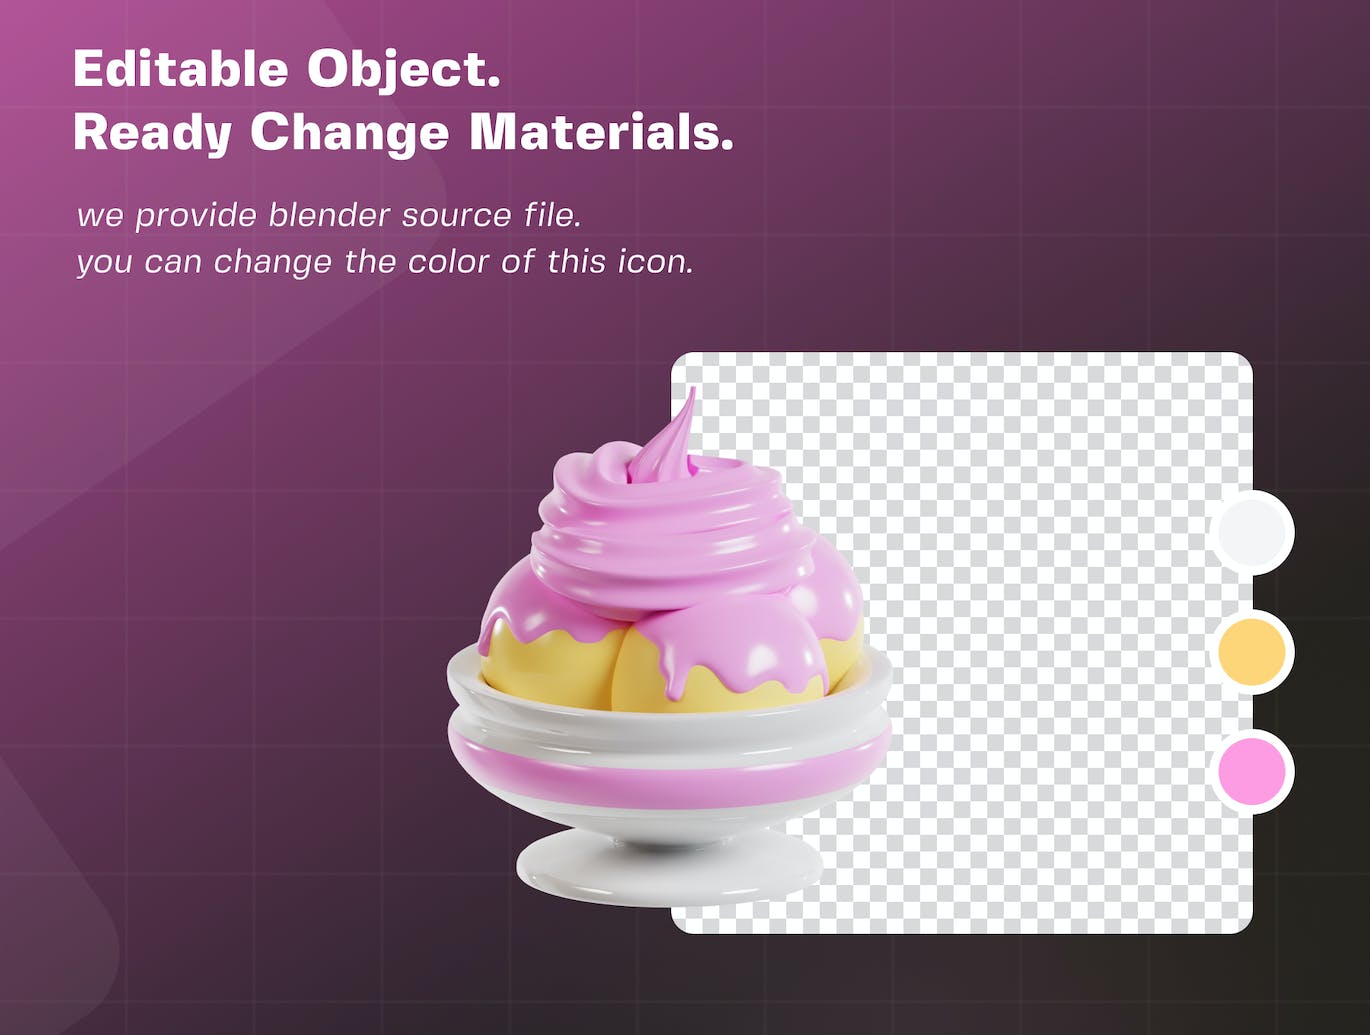 卡通冰淇淋3D插画模型素材V2 (PNG,Blend,OBJ,FBX)